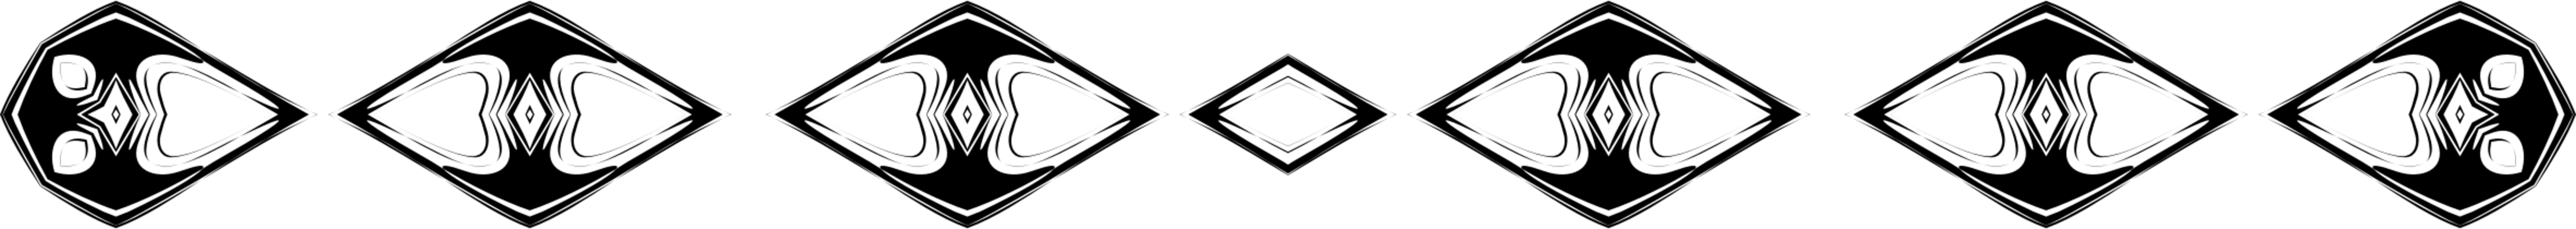 Logo,Line,Square